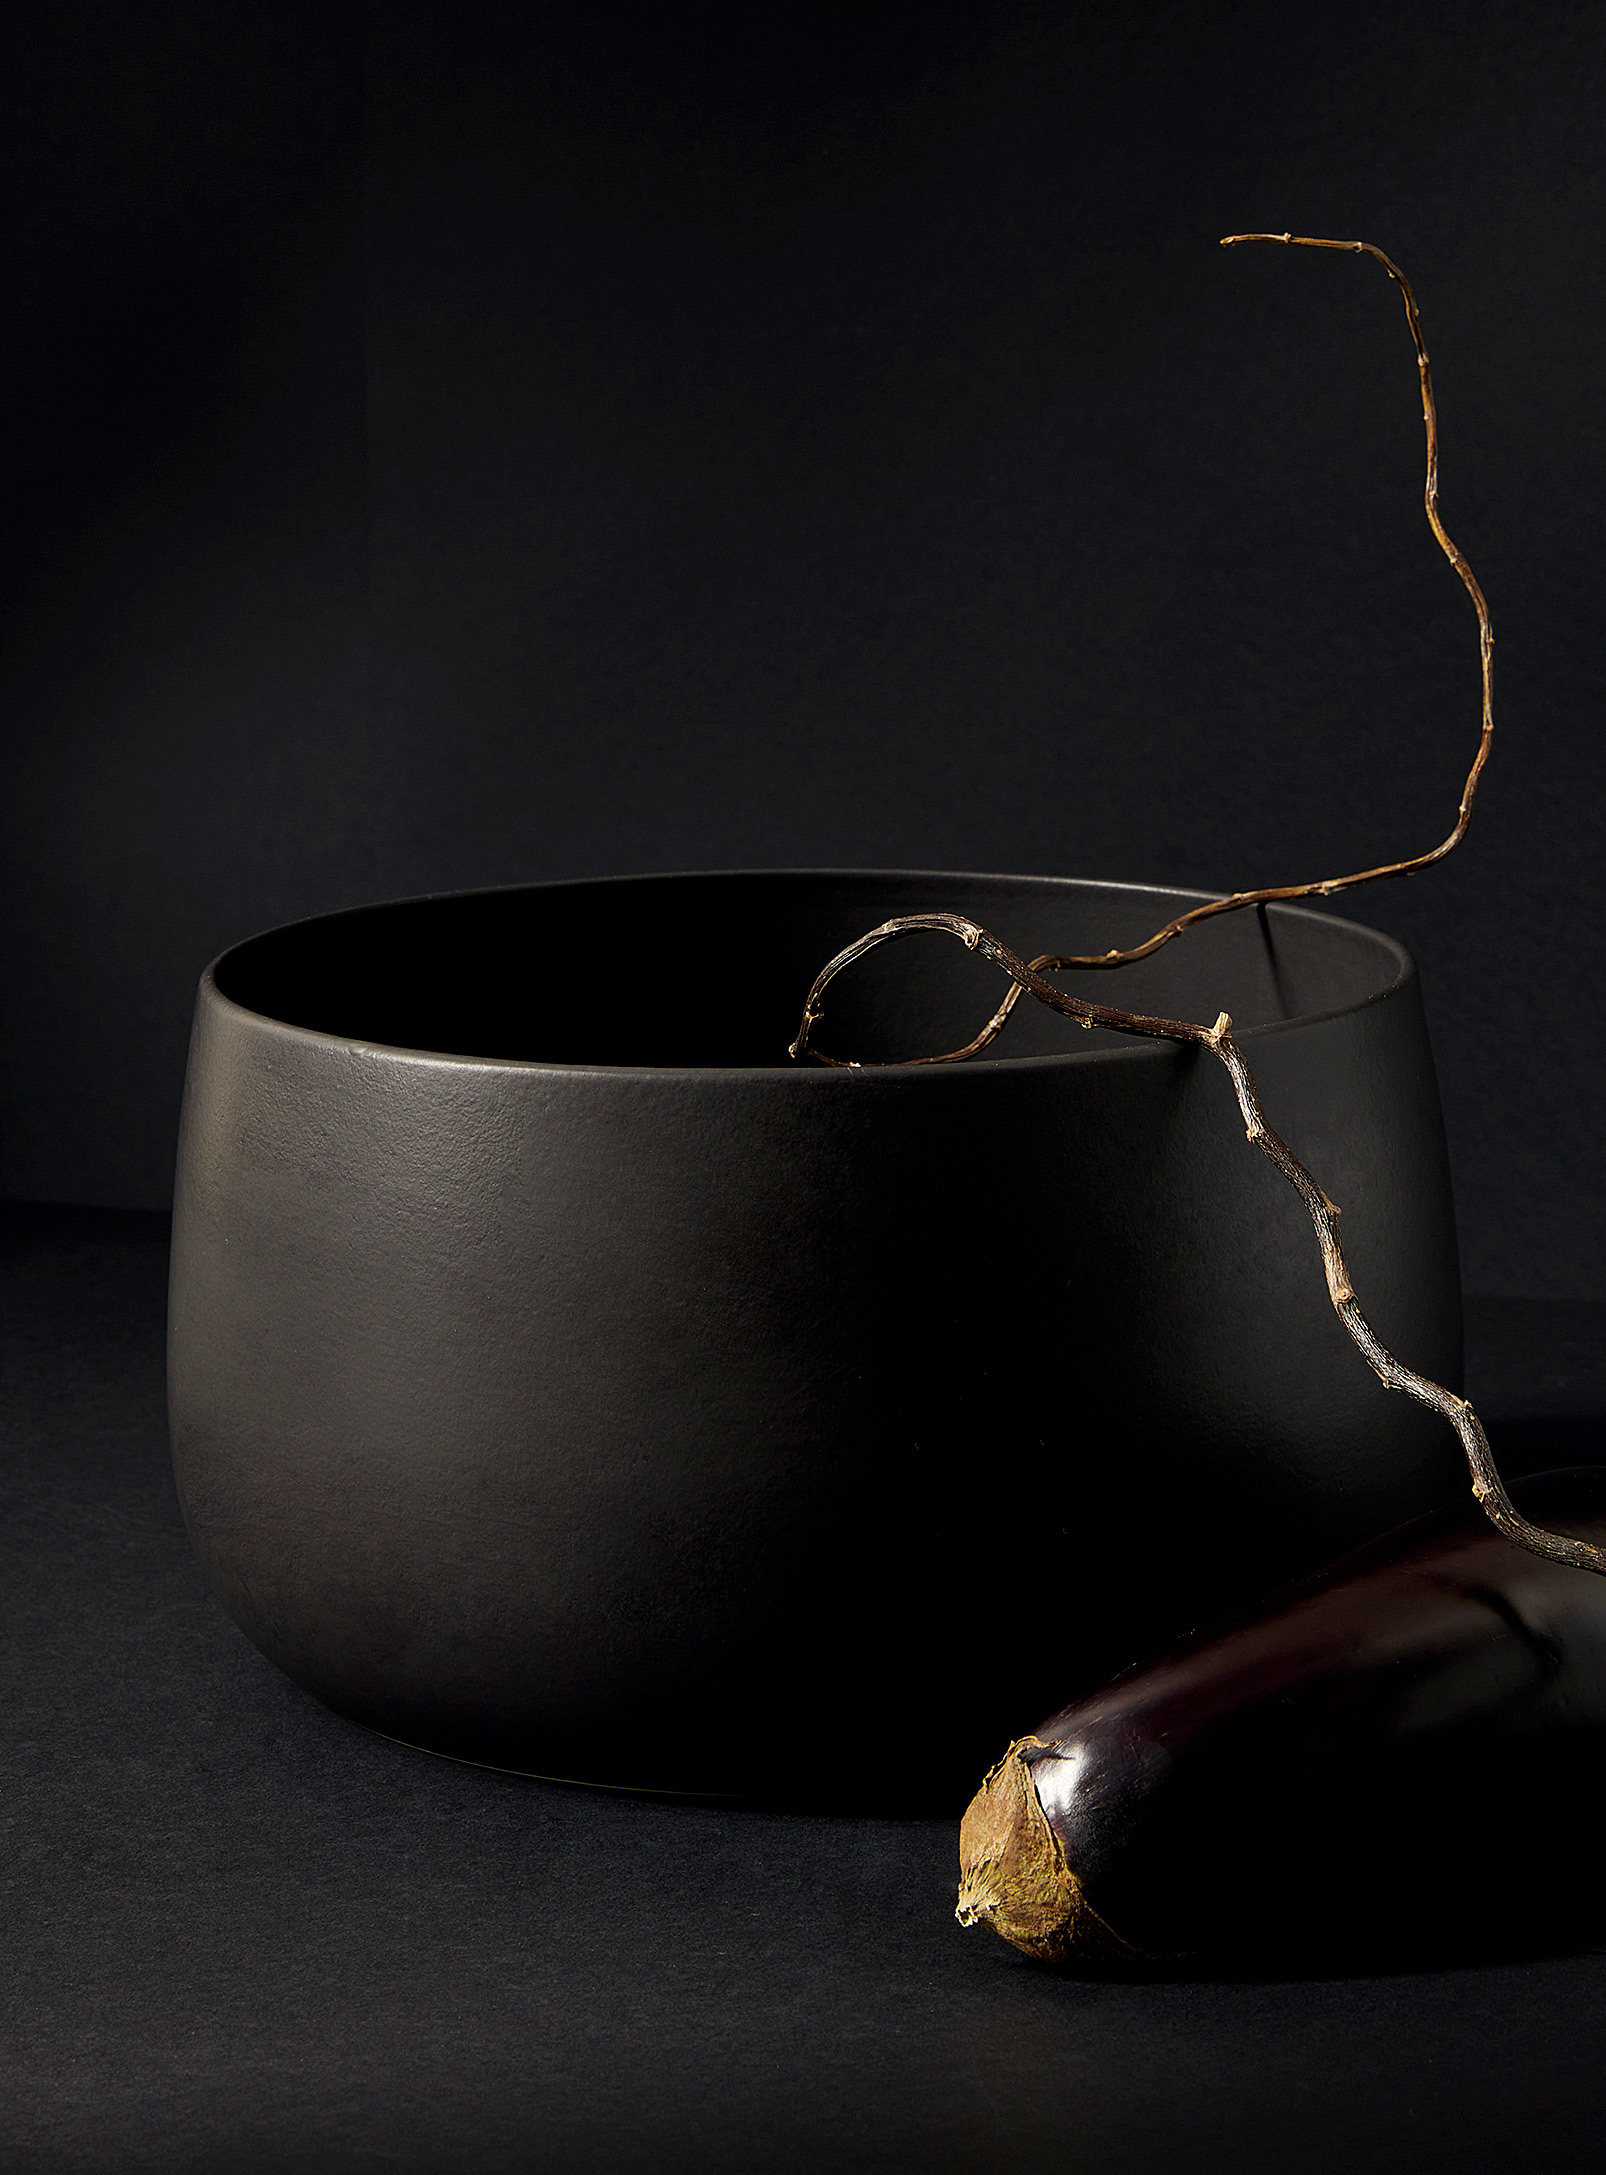 Gharyan Stoneware Serving Bowl In Black